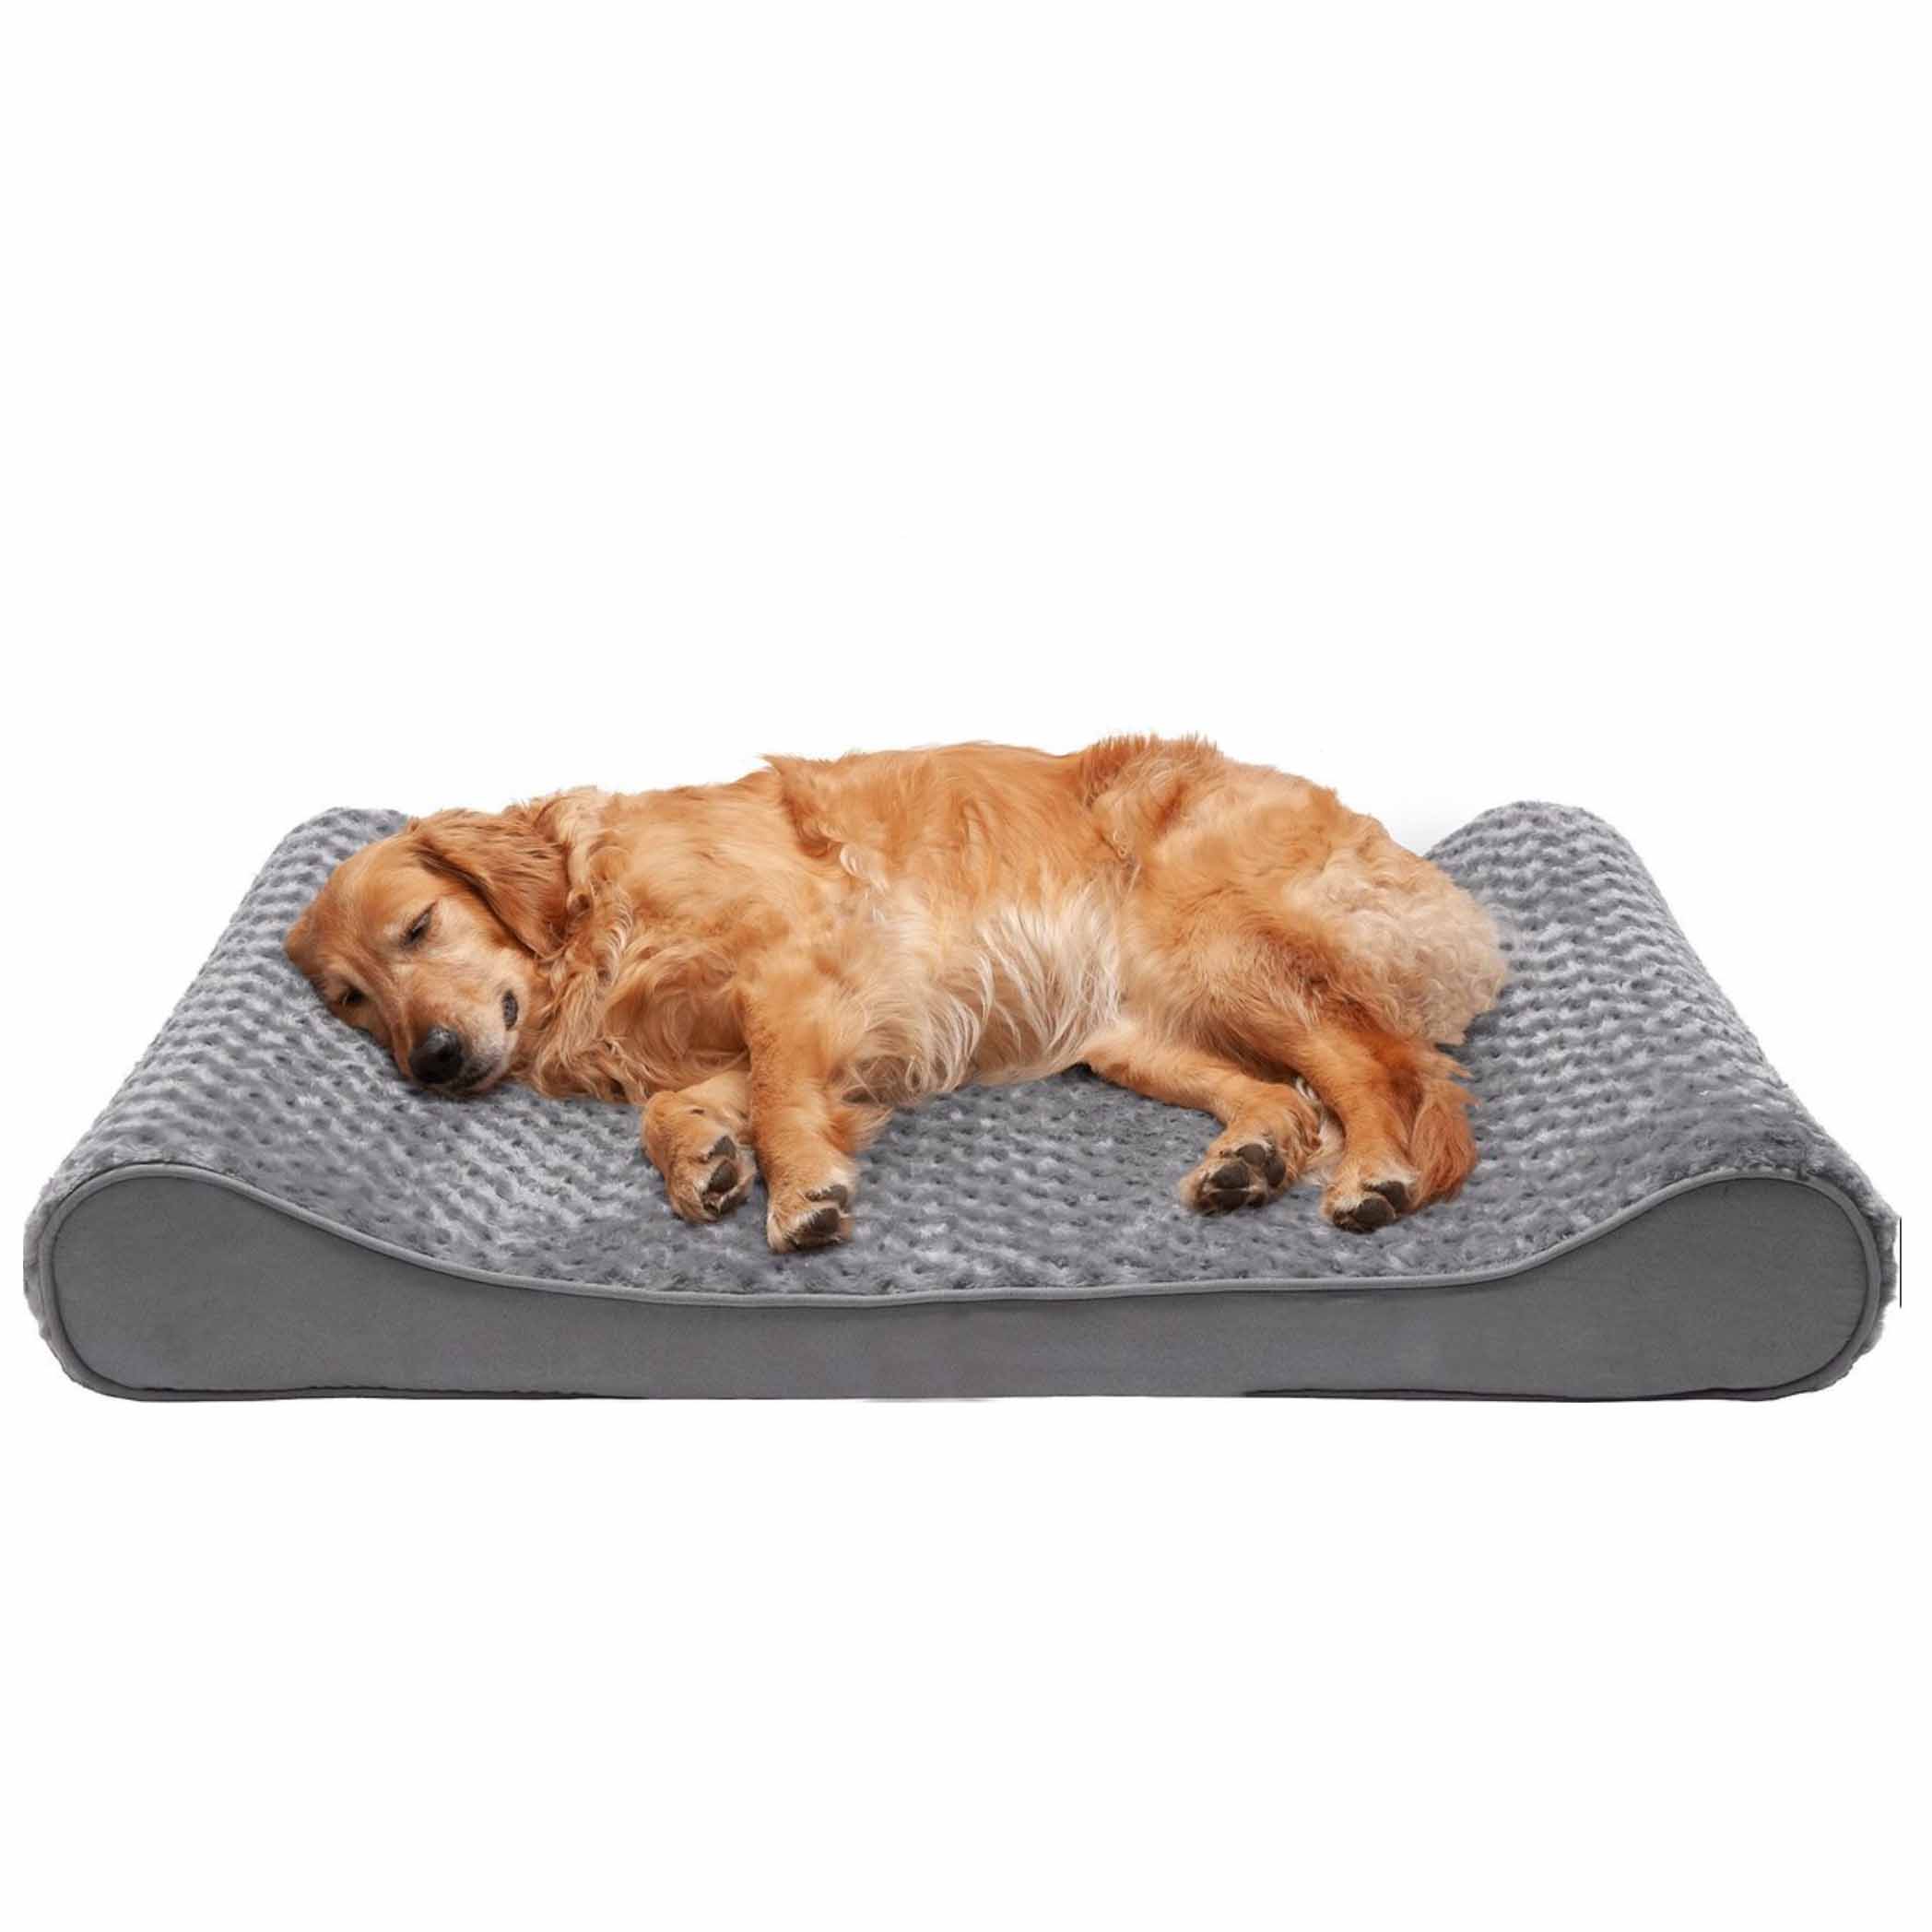 Dog lying on grey rectangle dog bed